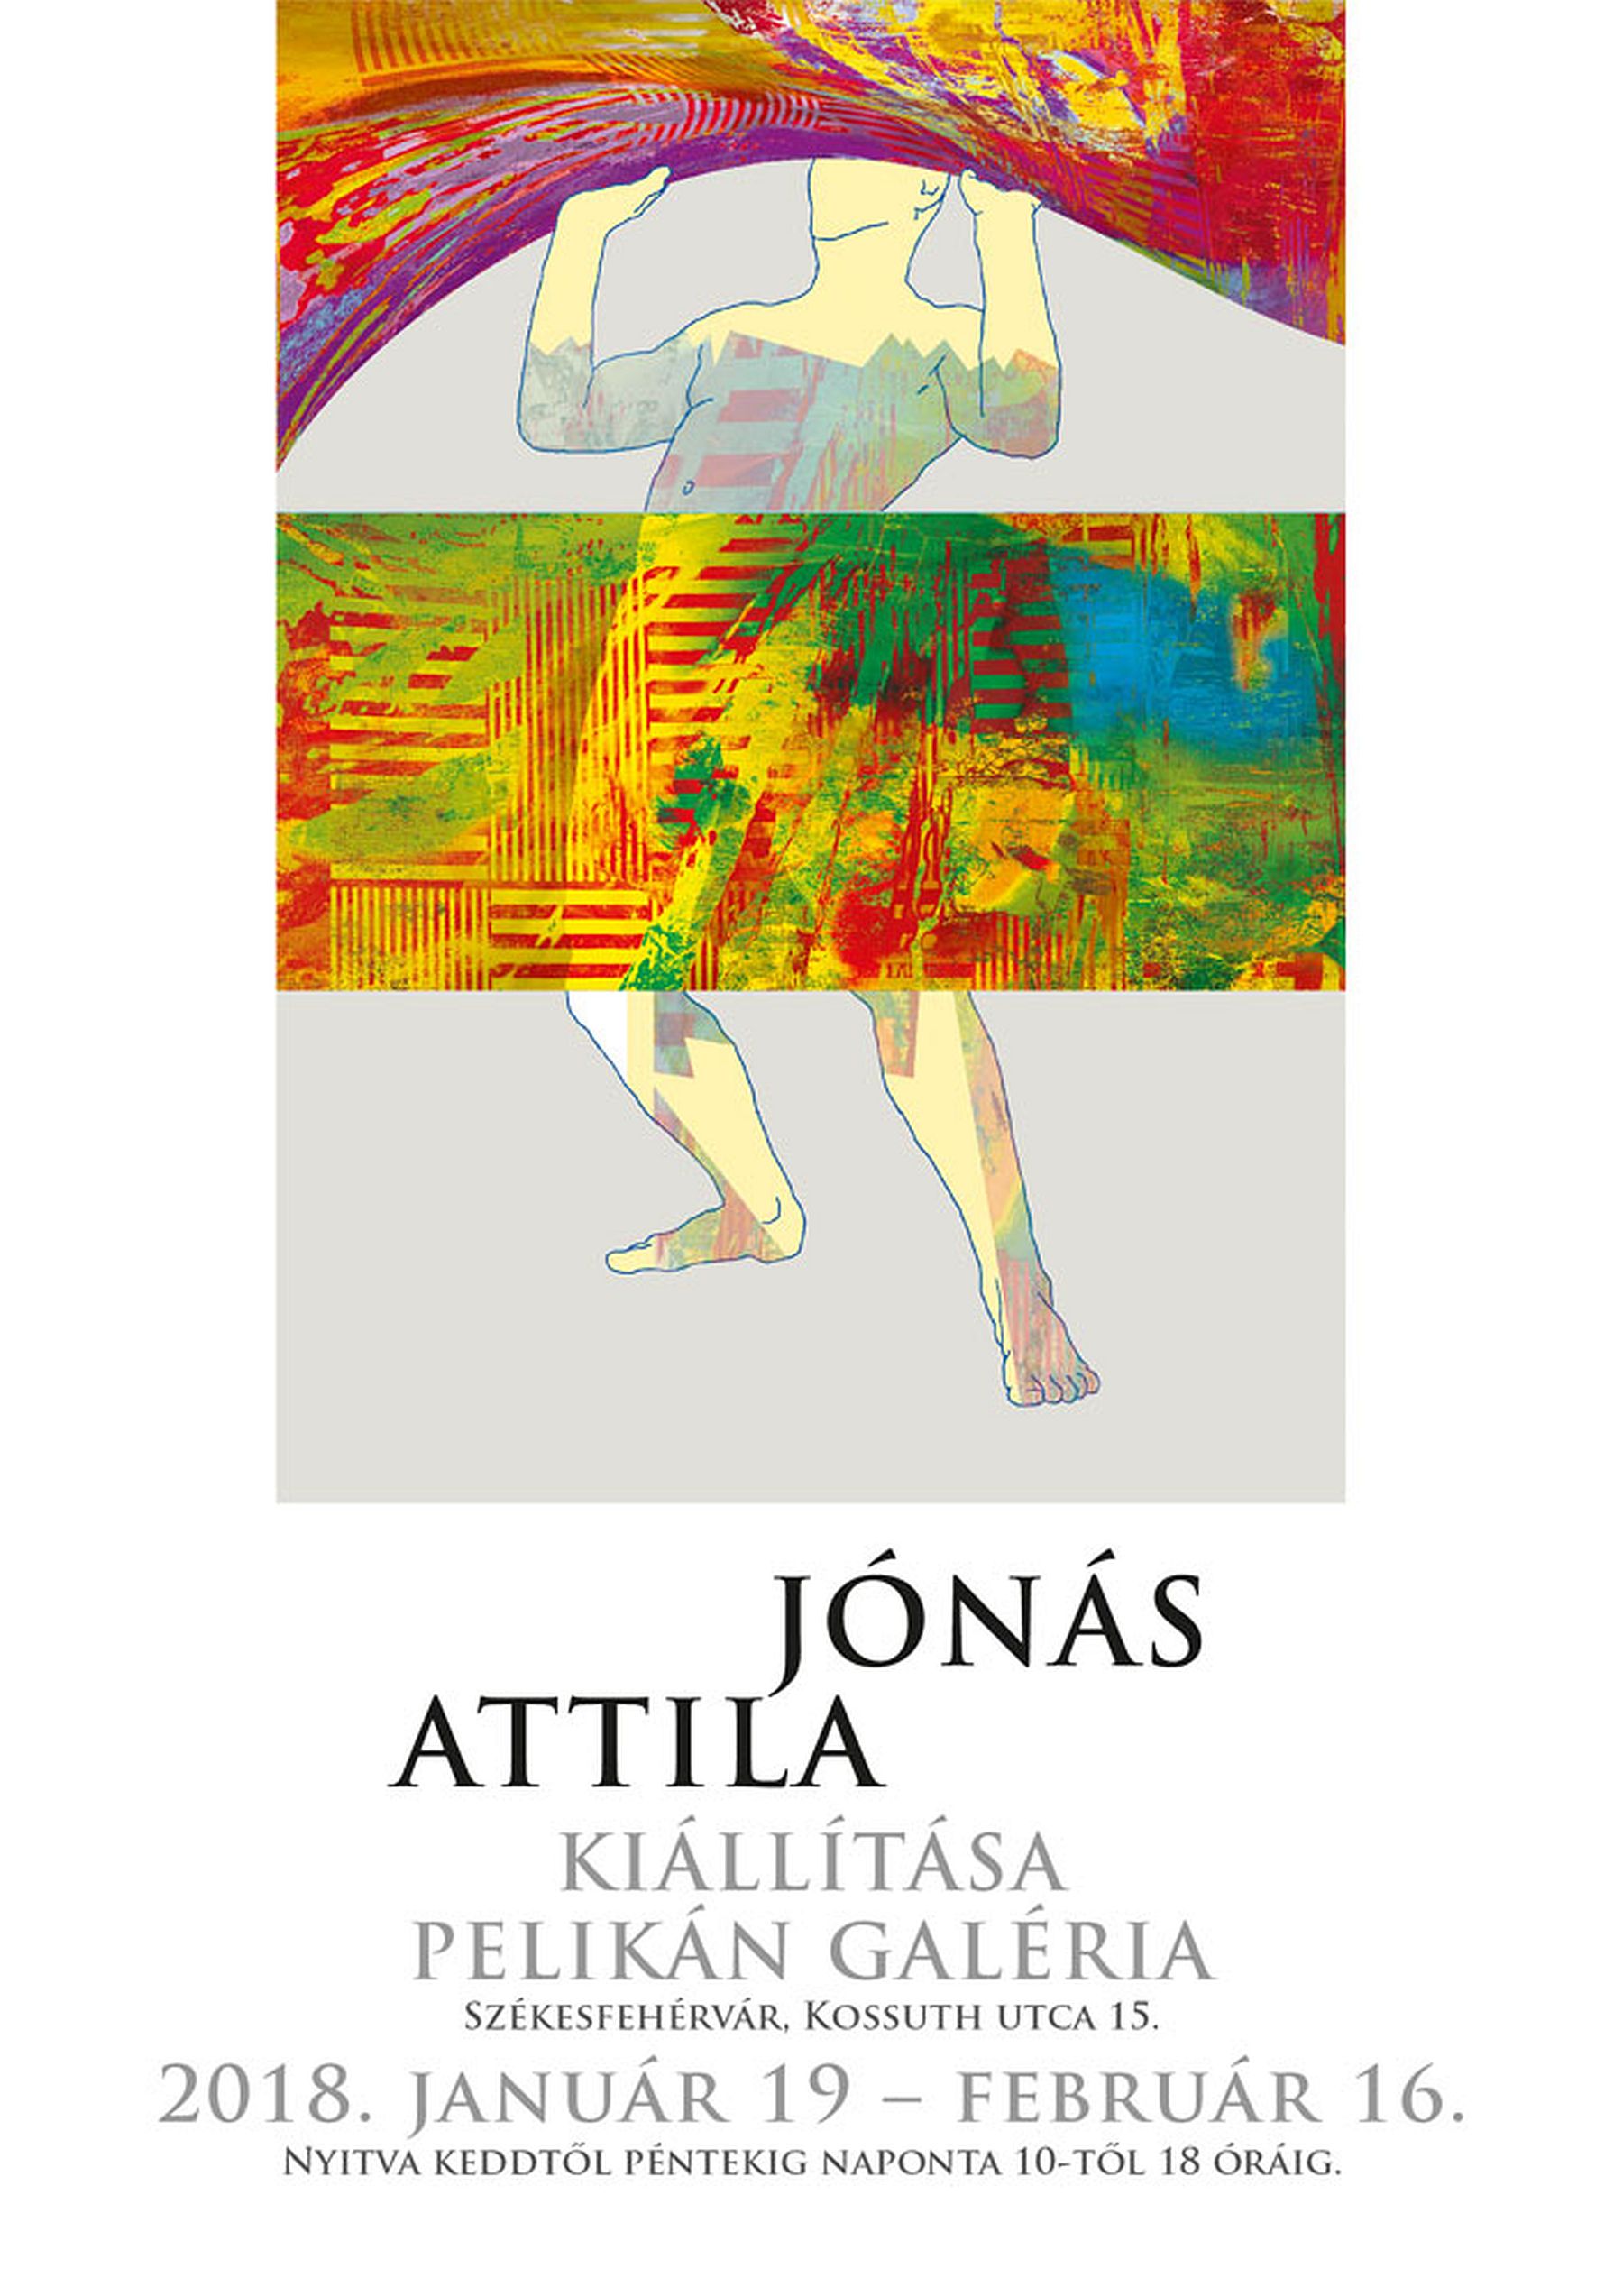 Jónás Attila kiállításának megnyitója a Pelikán Galériában